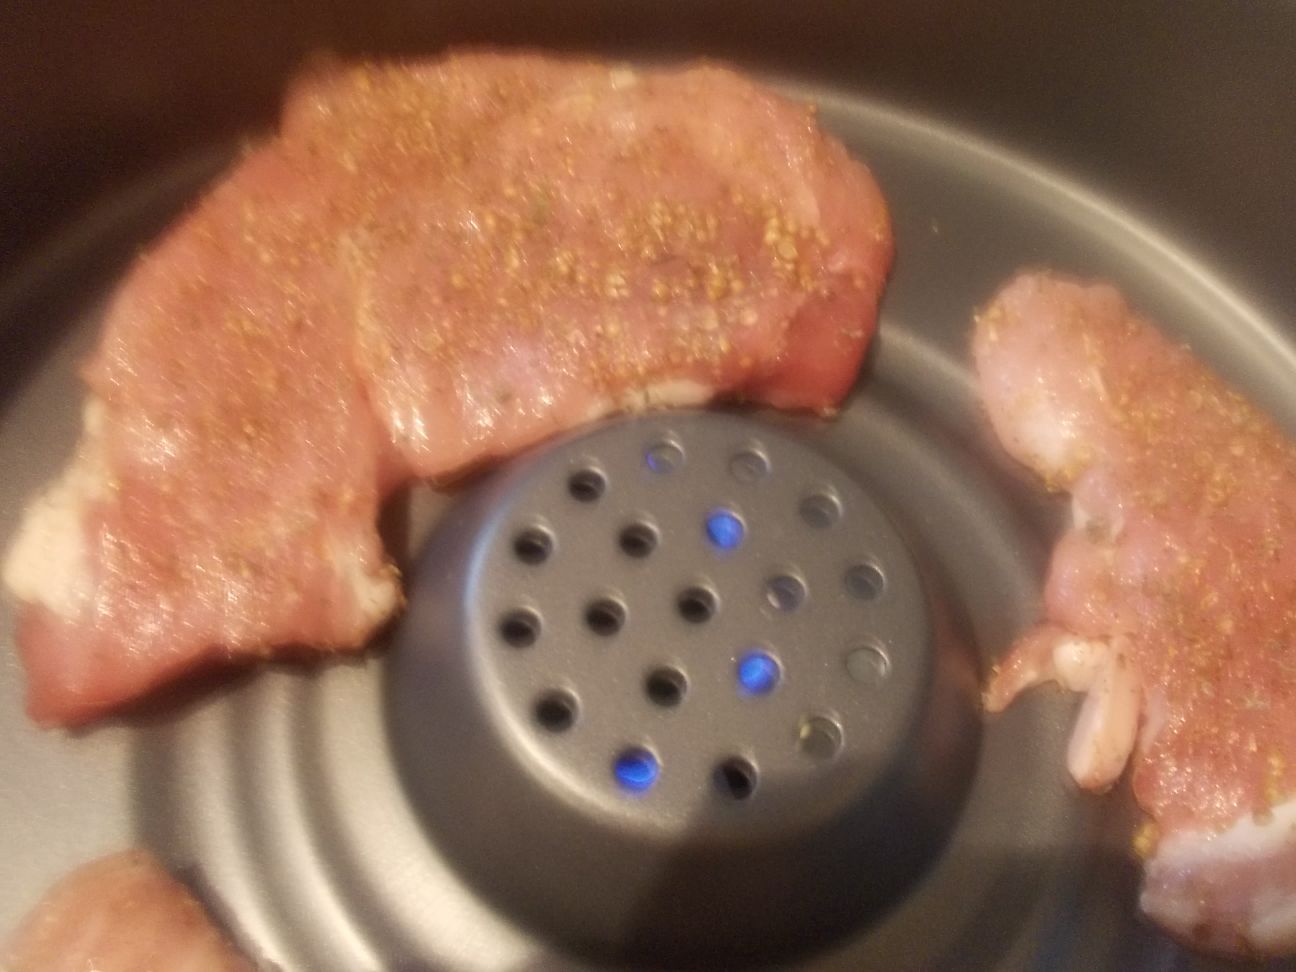 Cotlet de porc cu sos de rodii